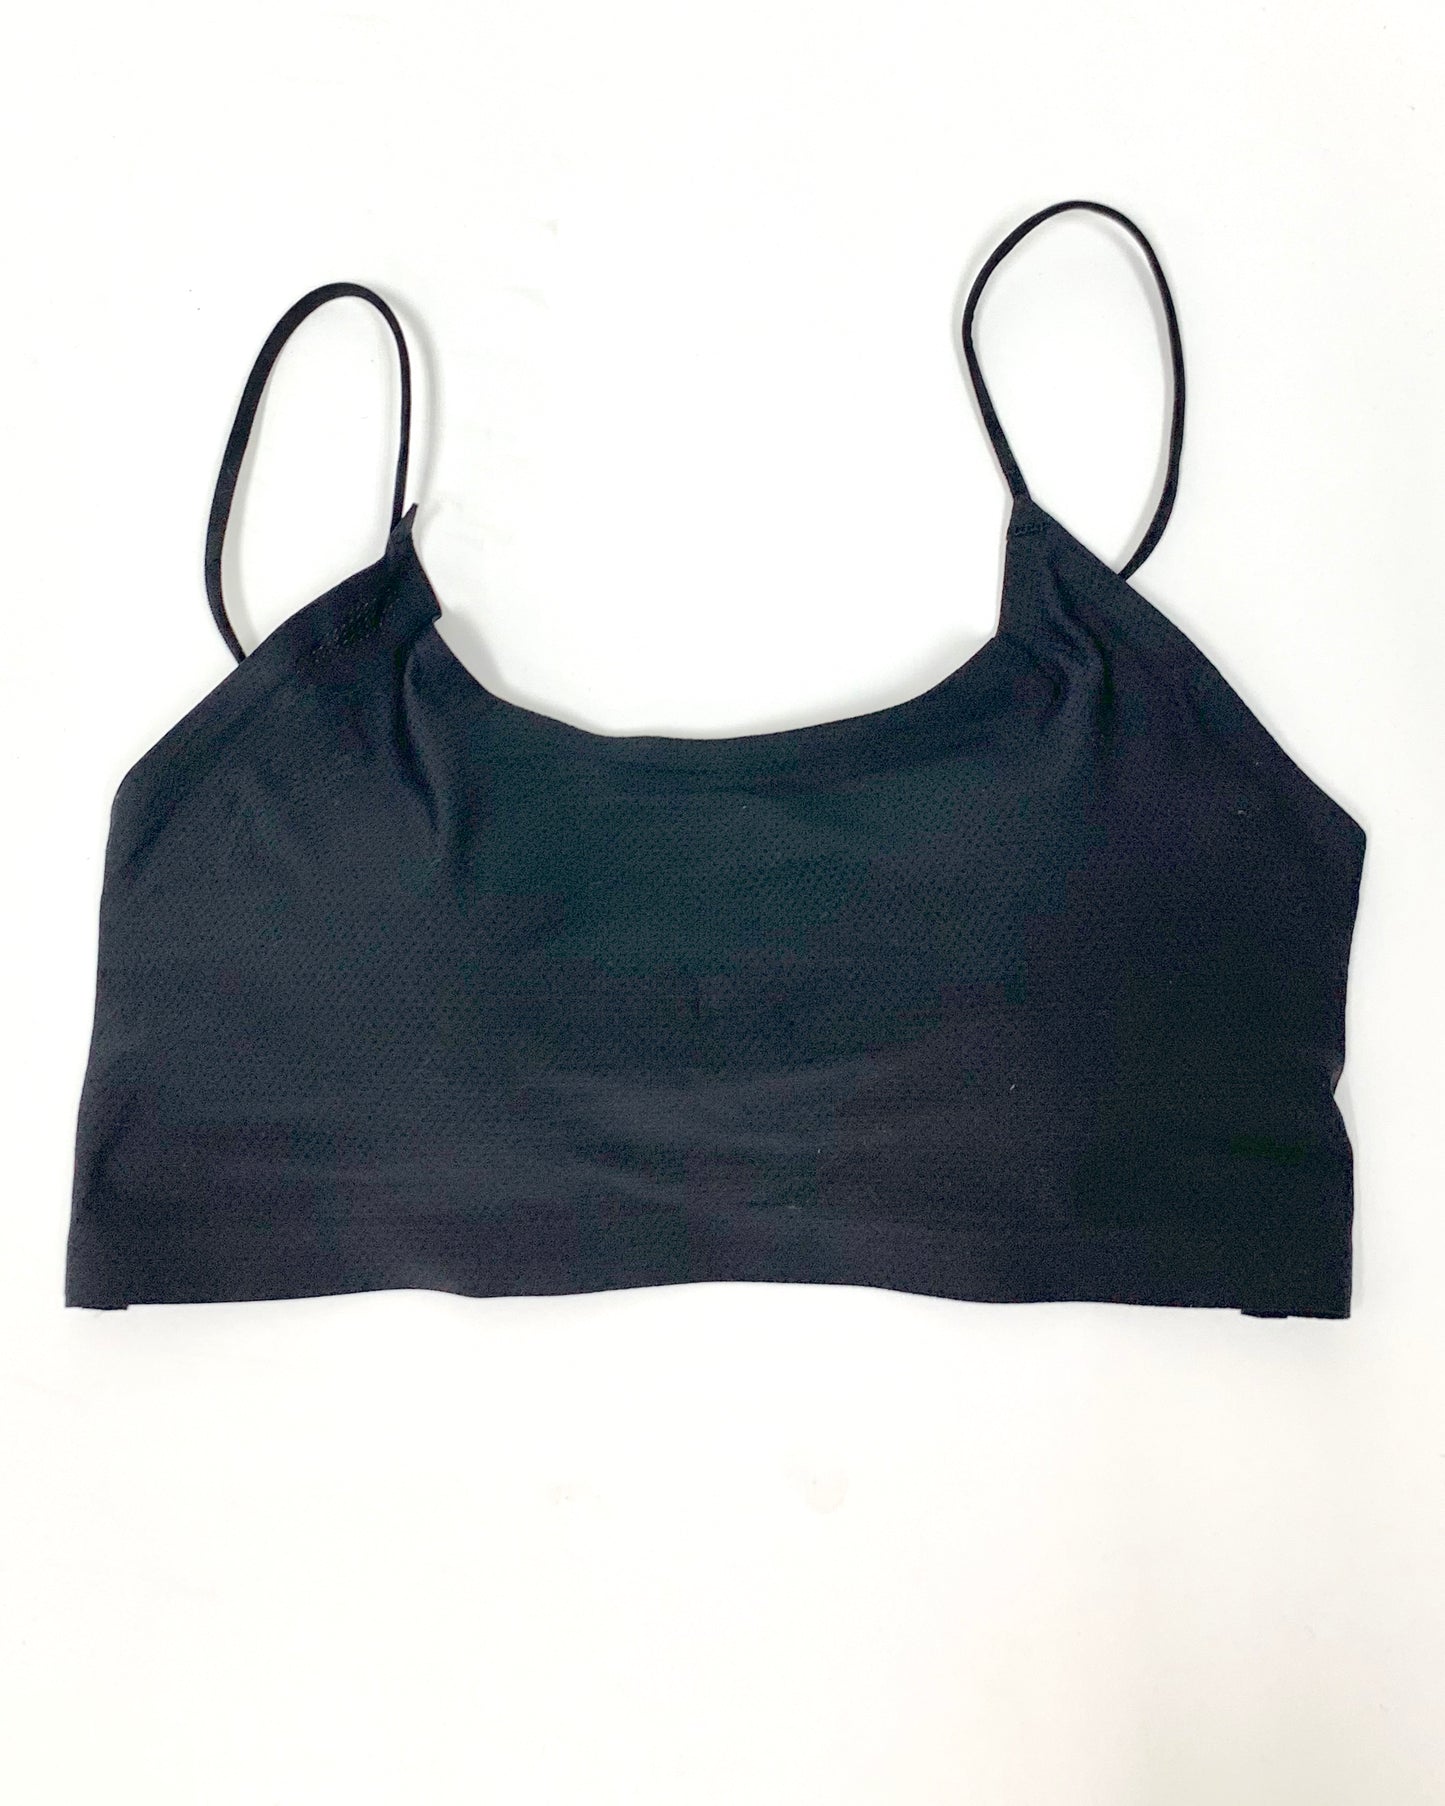 black strappy back bra top *pre-order*